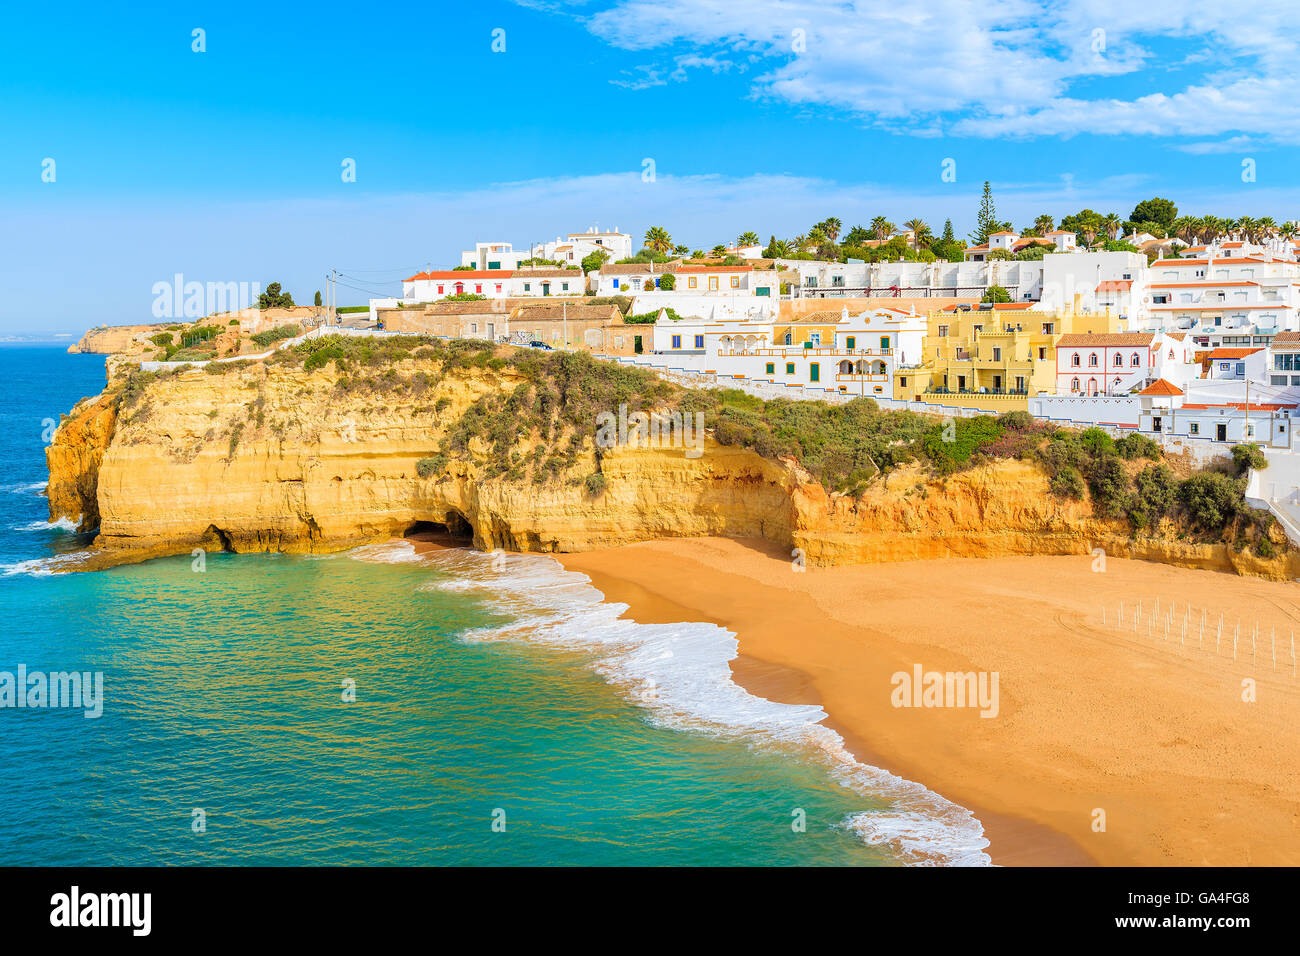 Una vista della spiaggia con case colorate in Carvoeiro villaggio di pescatori, Portogallo Foto Stock